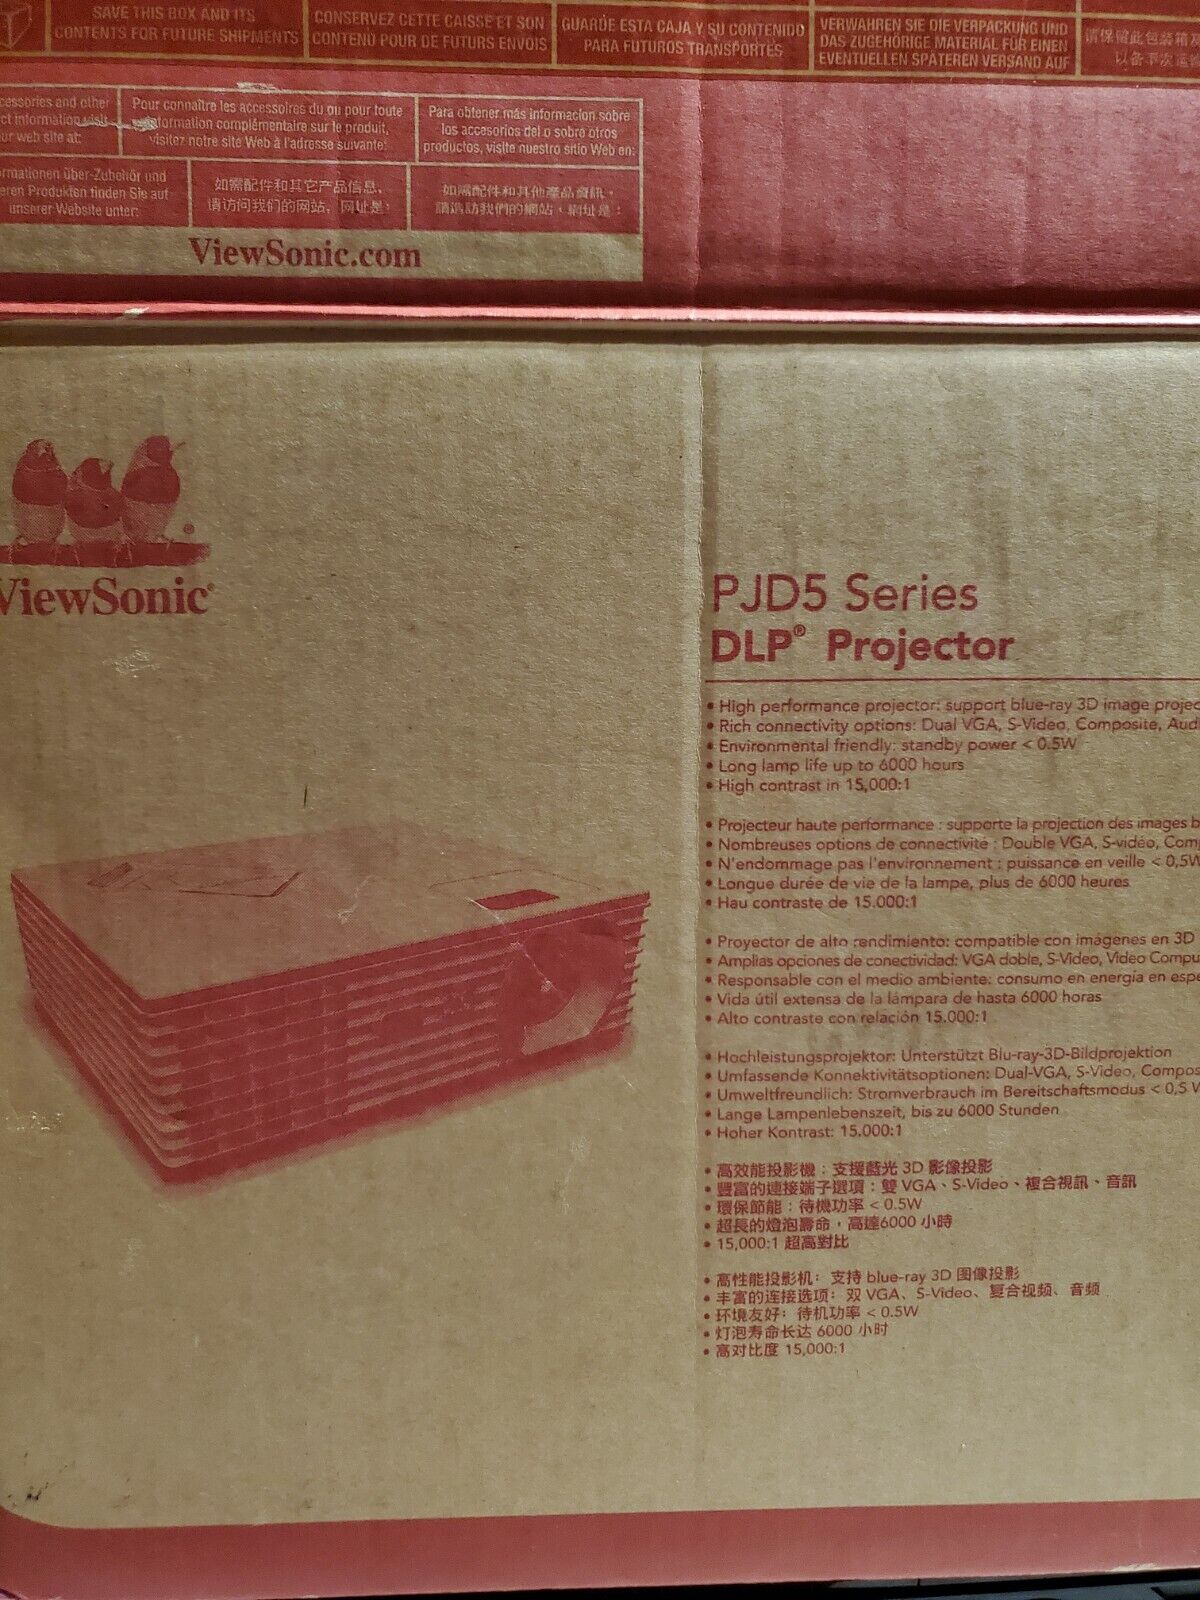 ViewSonic PJD5132 DLP Projector (VS14926) 15000:1 -4:3- 800x600 In Original Box